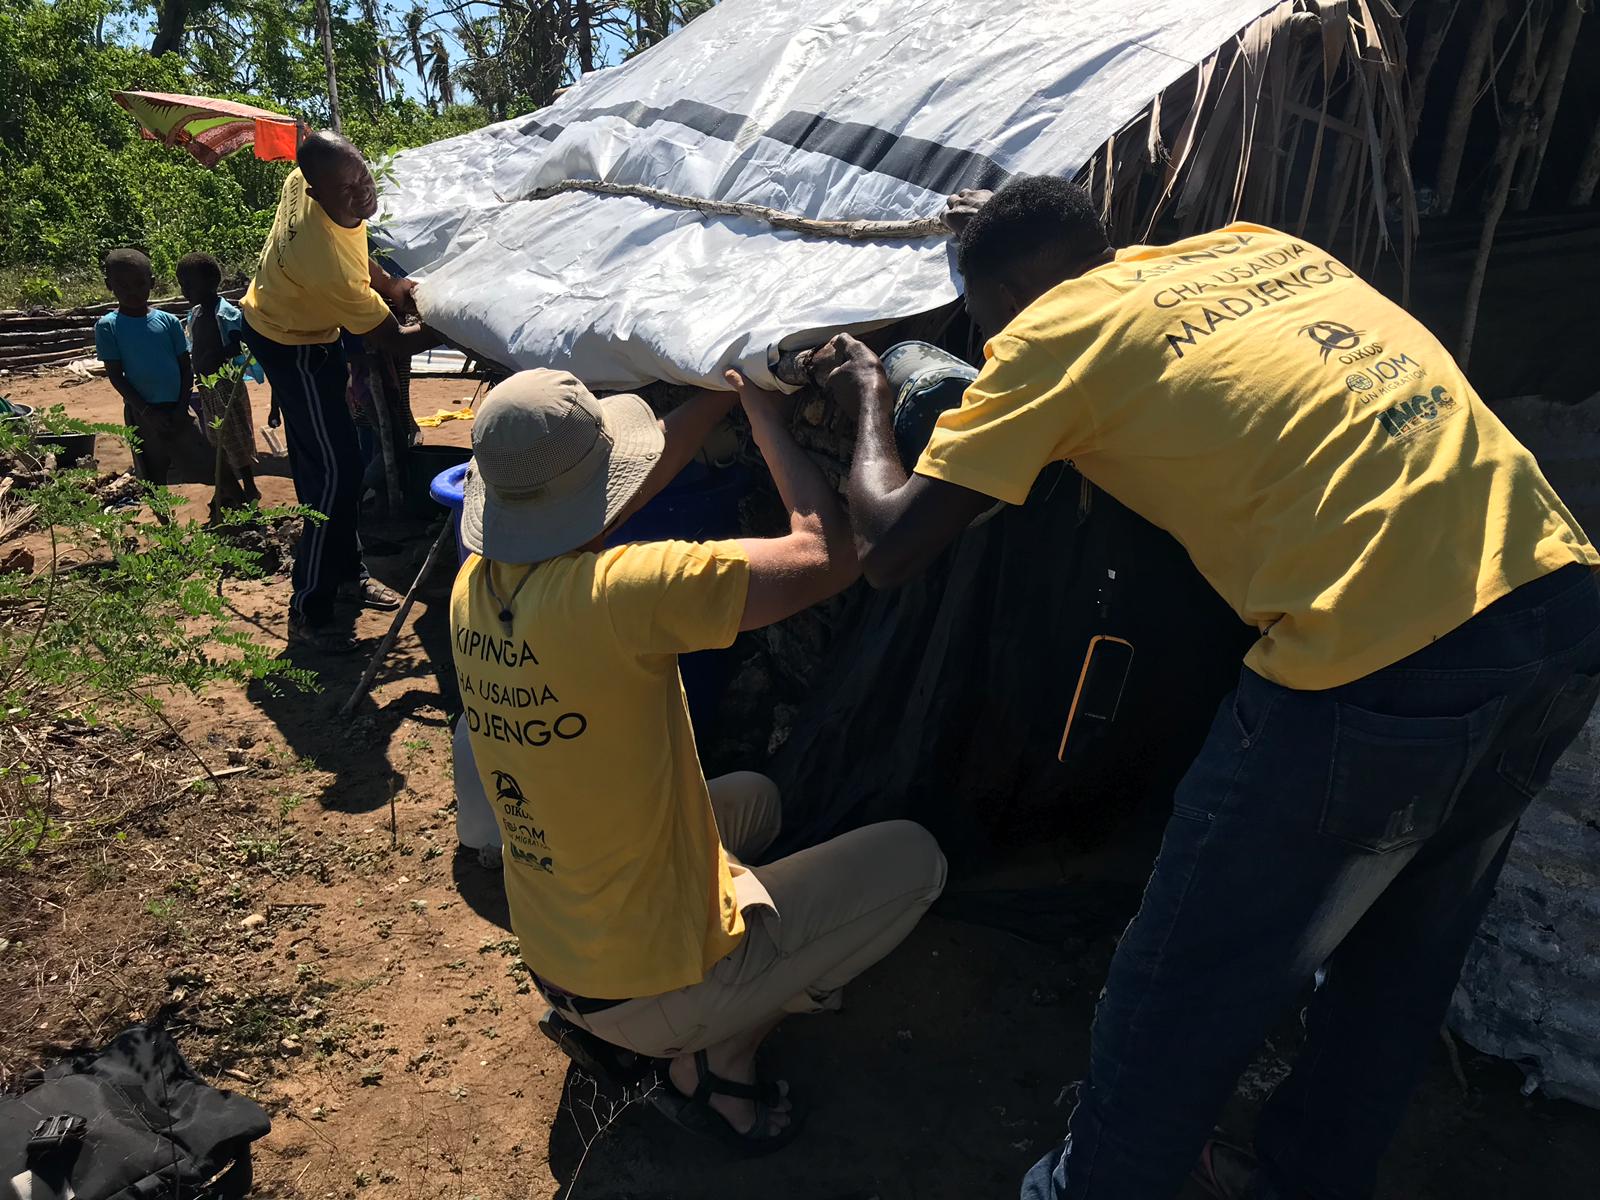 Shelter team al lavoro per ricostruire i tetti